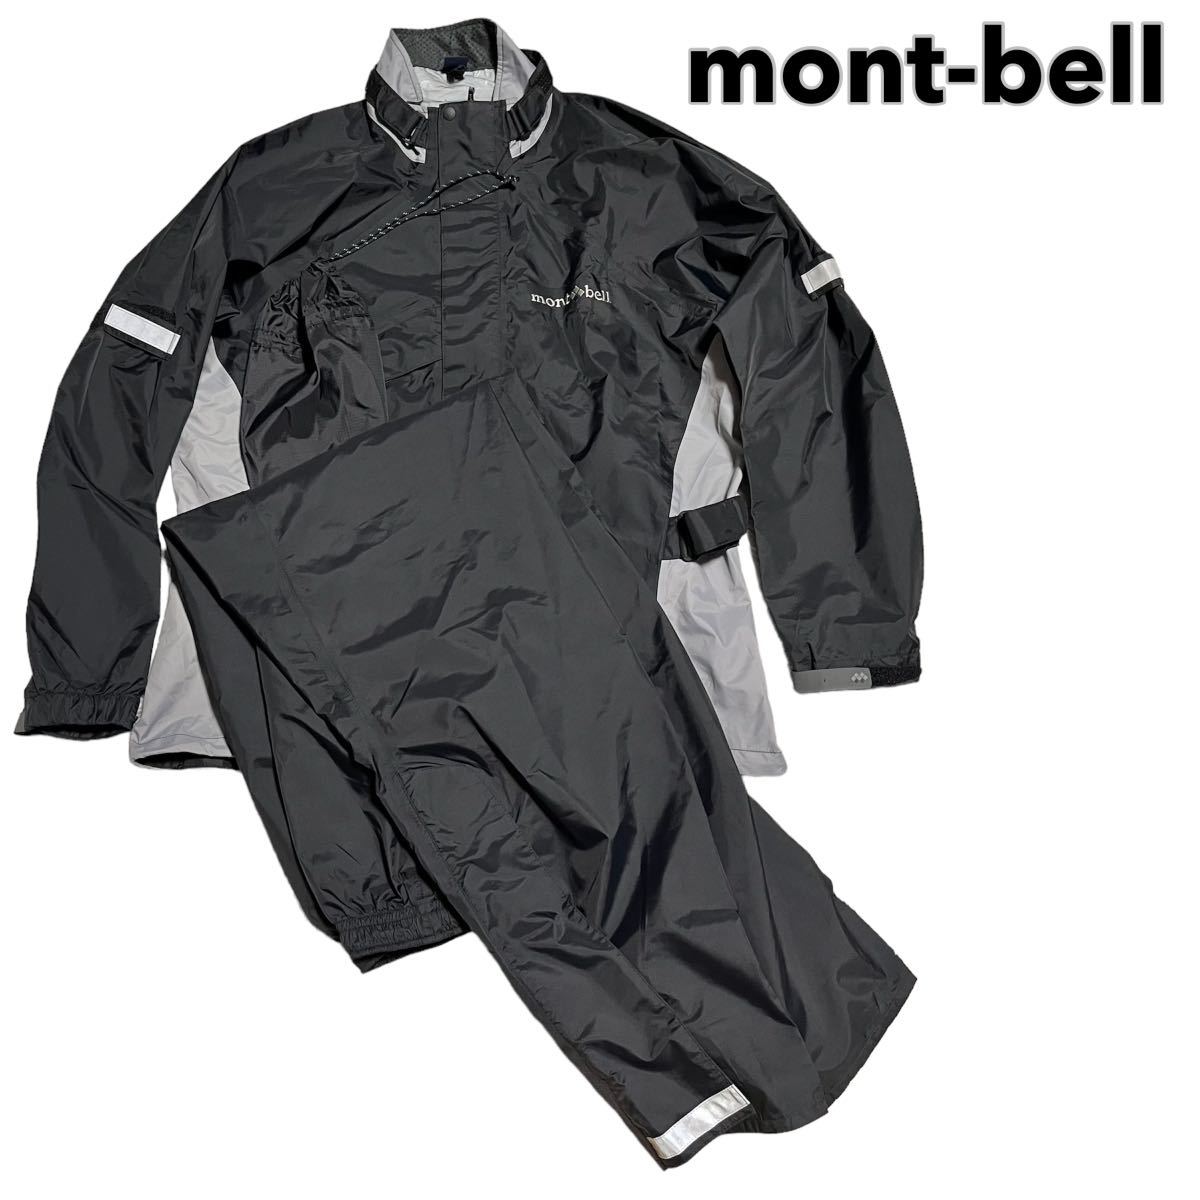 【テレビで話題】 mont-bell 状態良 STORM 保存袋付き バイクウェア パンツ ジャケット セットアップ 上下 レインウェア  ストームバイカー モンベル BIKER 男性用